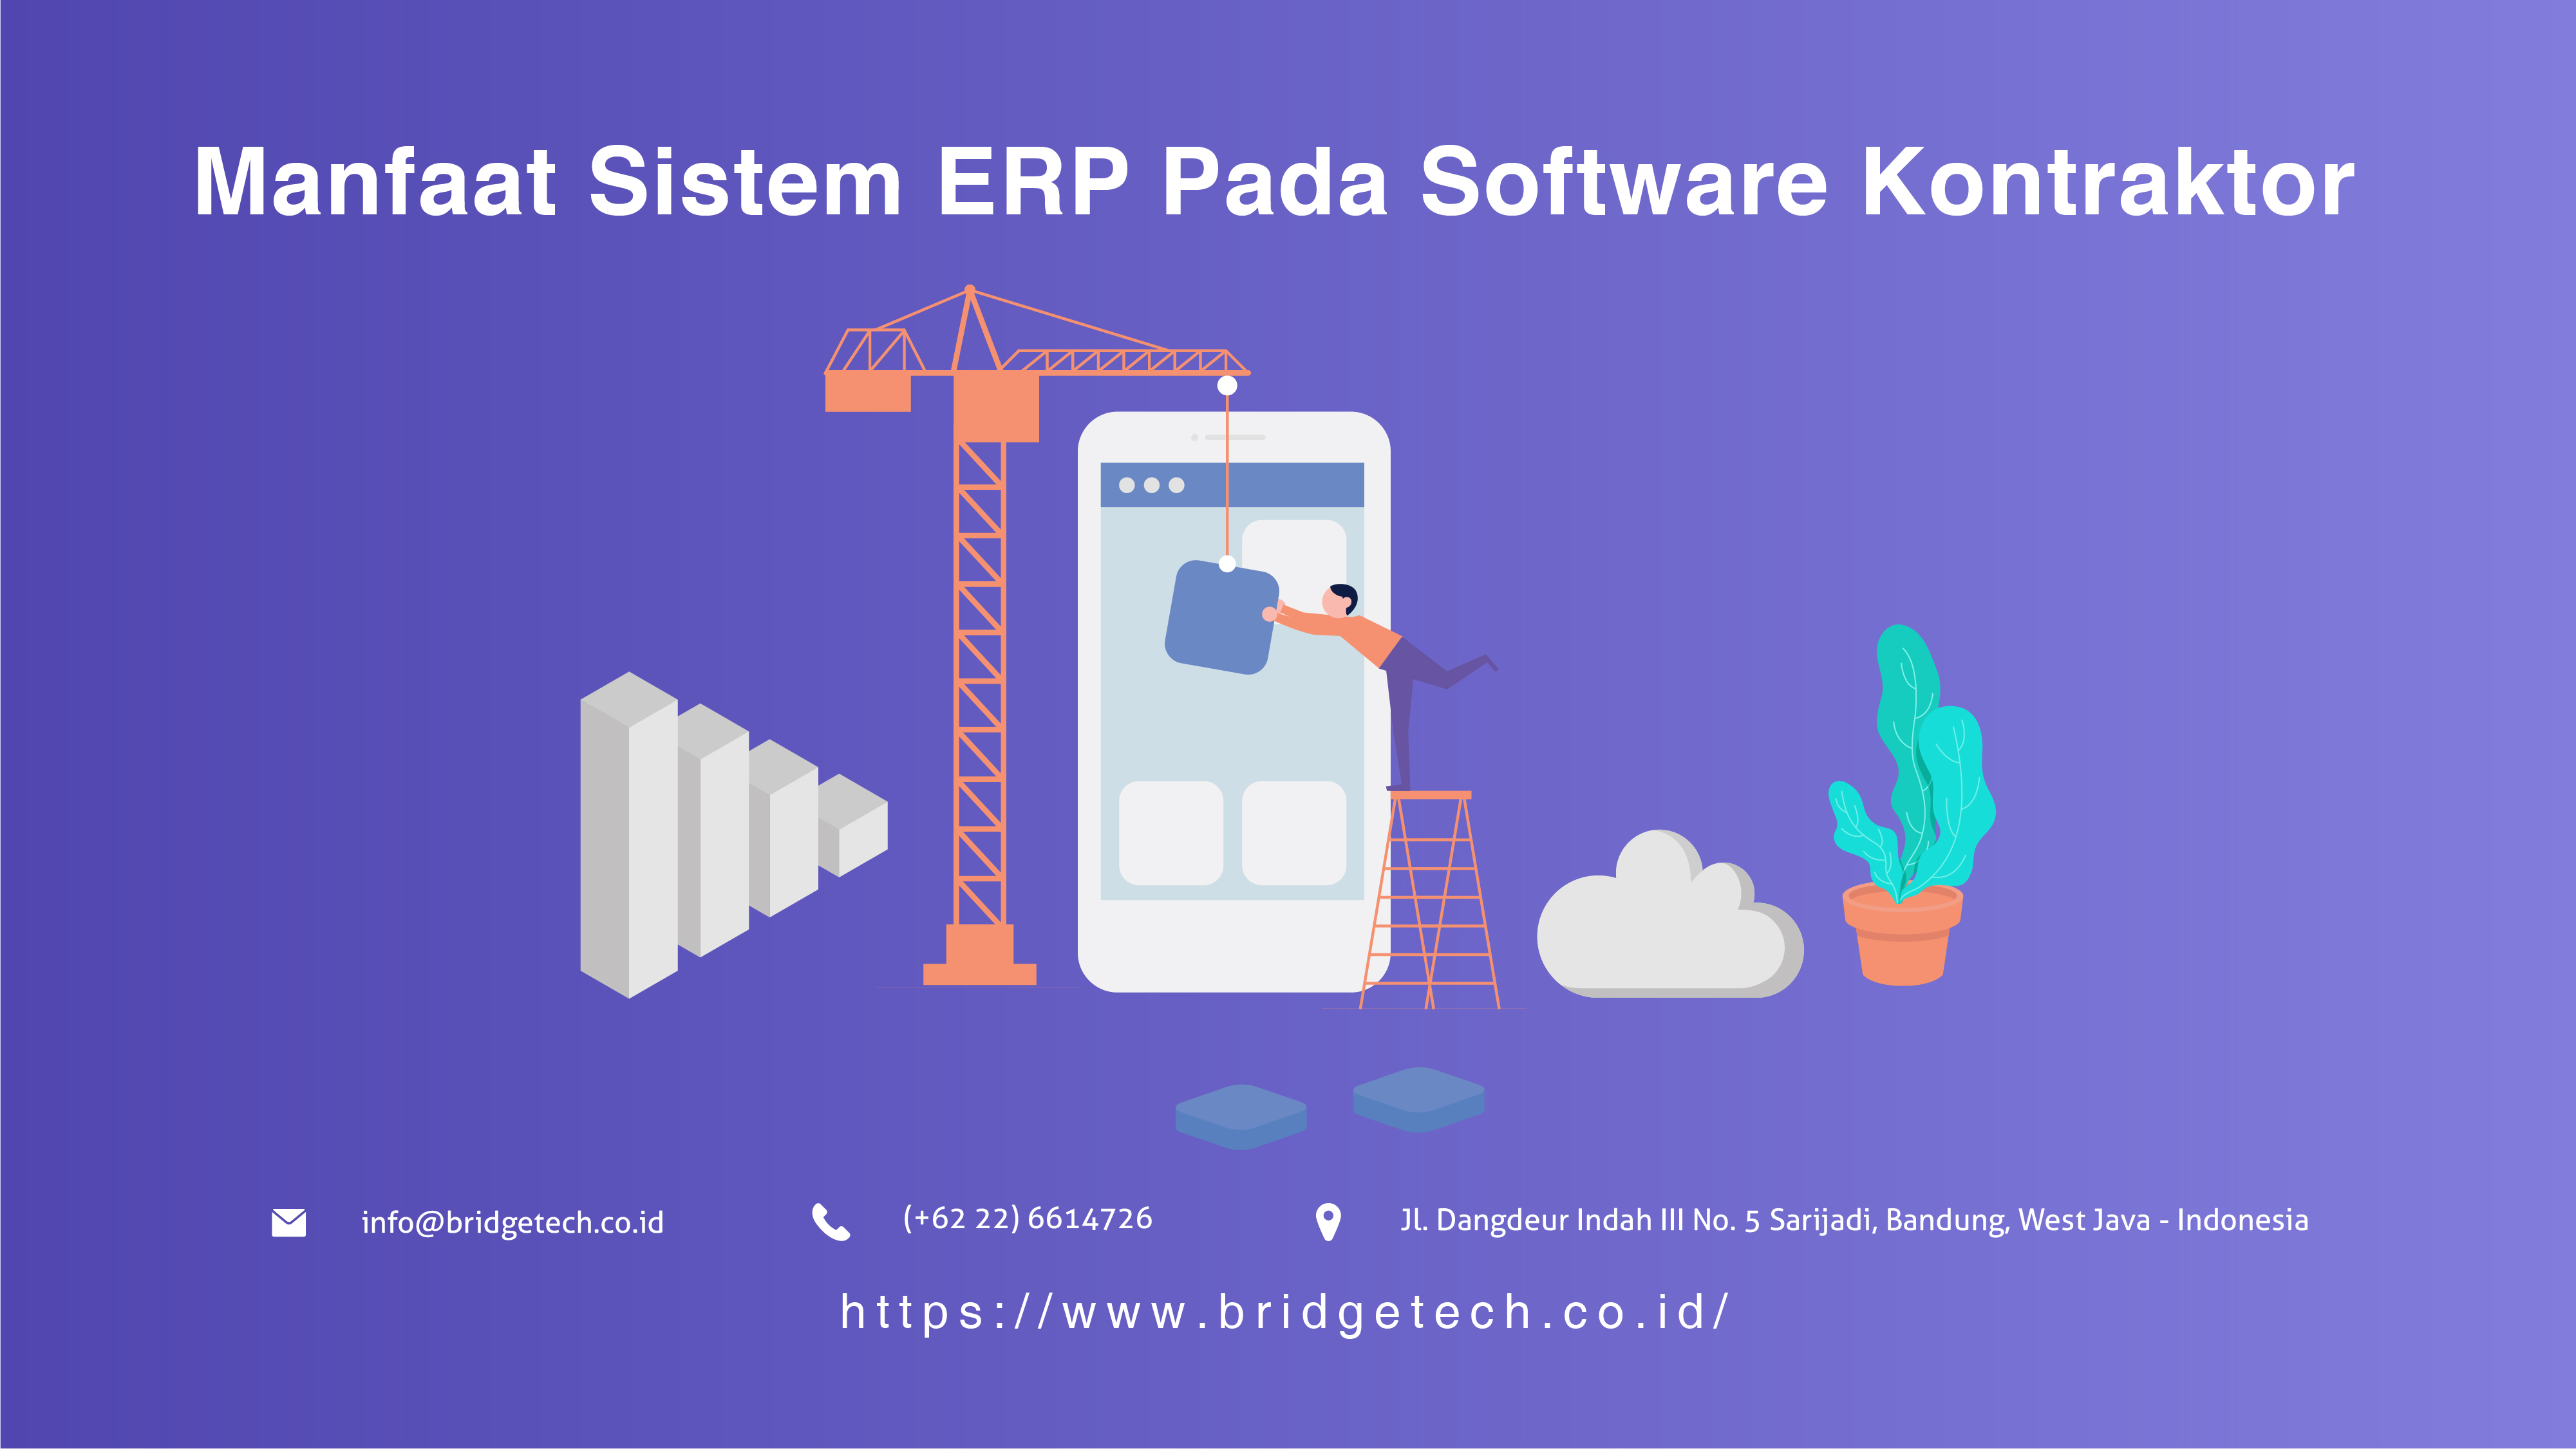 Manfaat Sistem ERP Pada Software Kontraktor